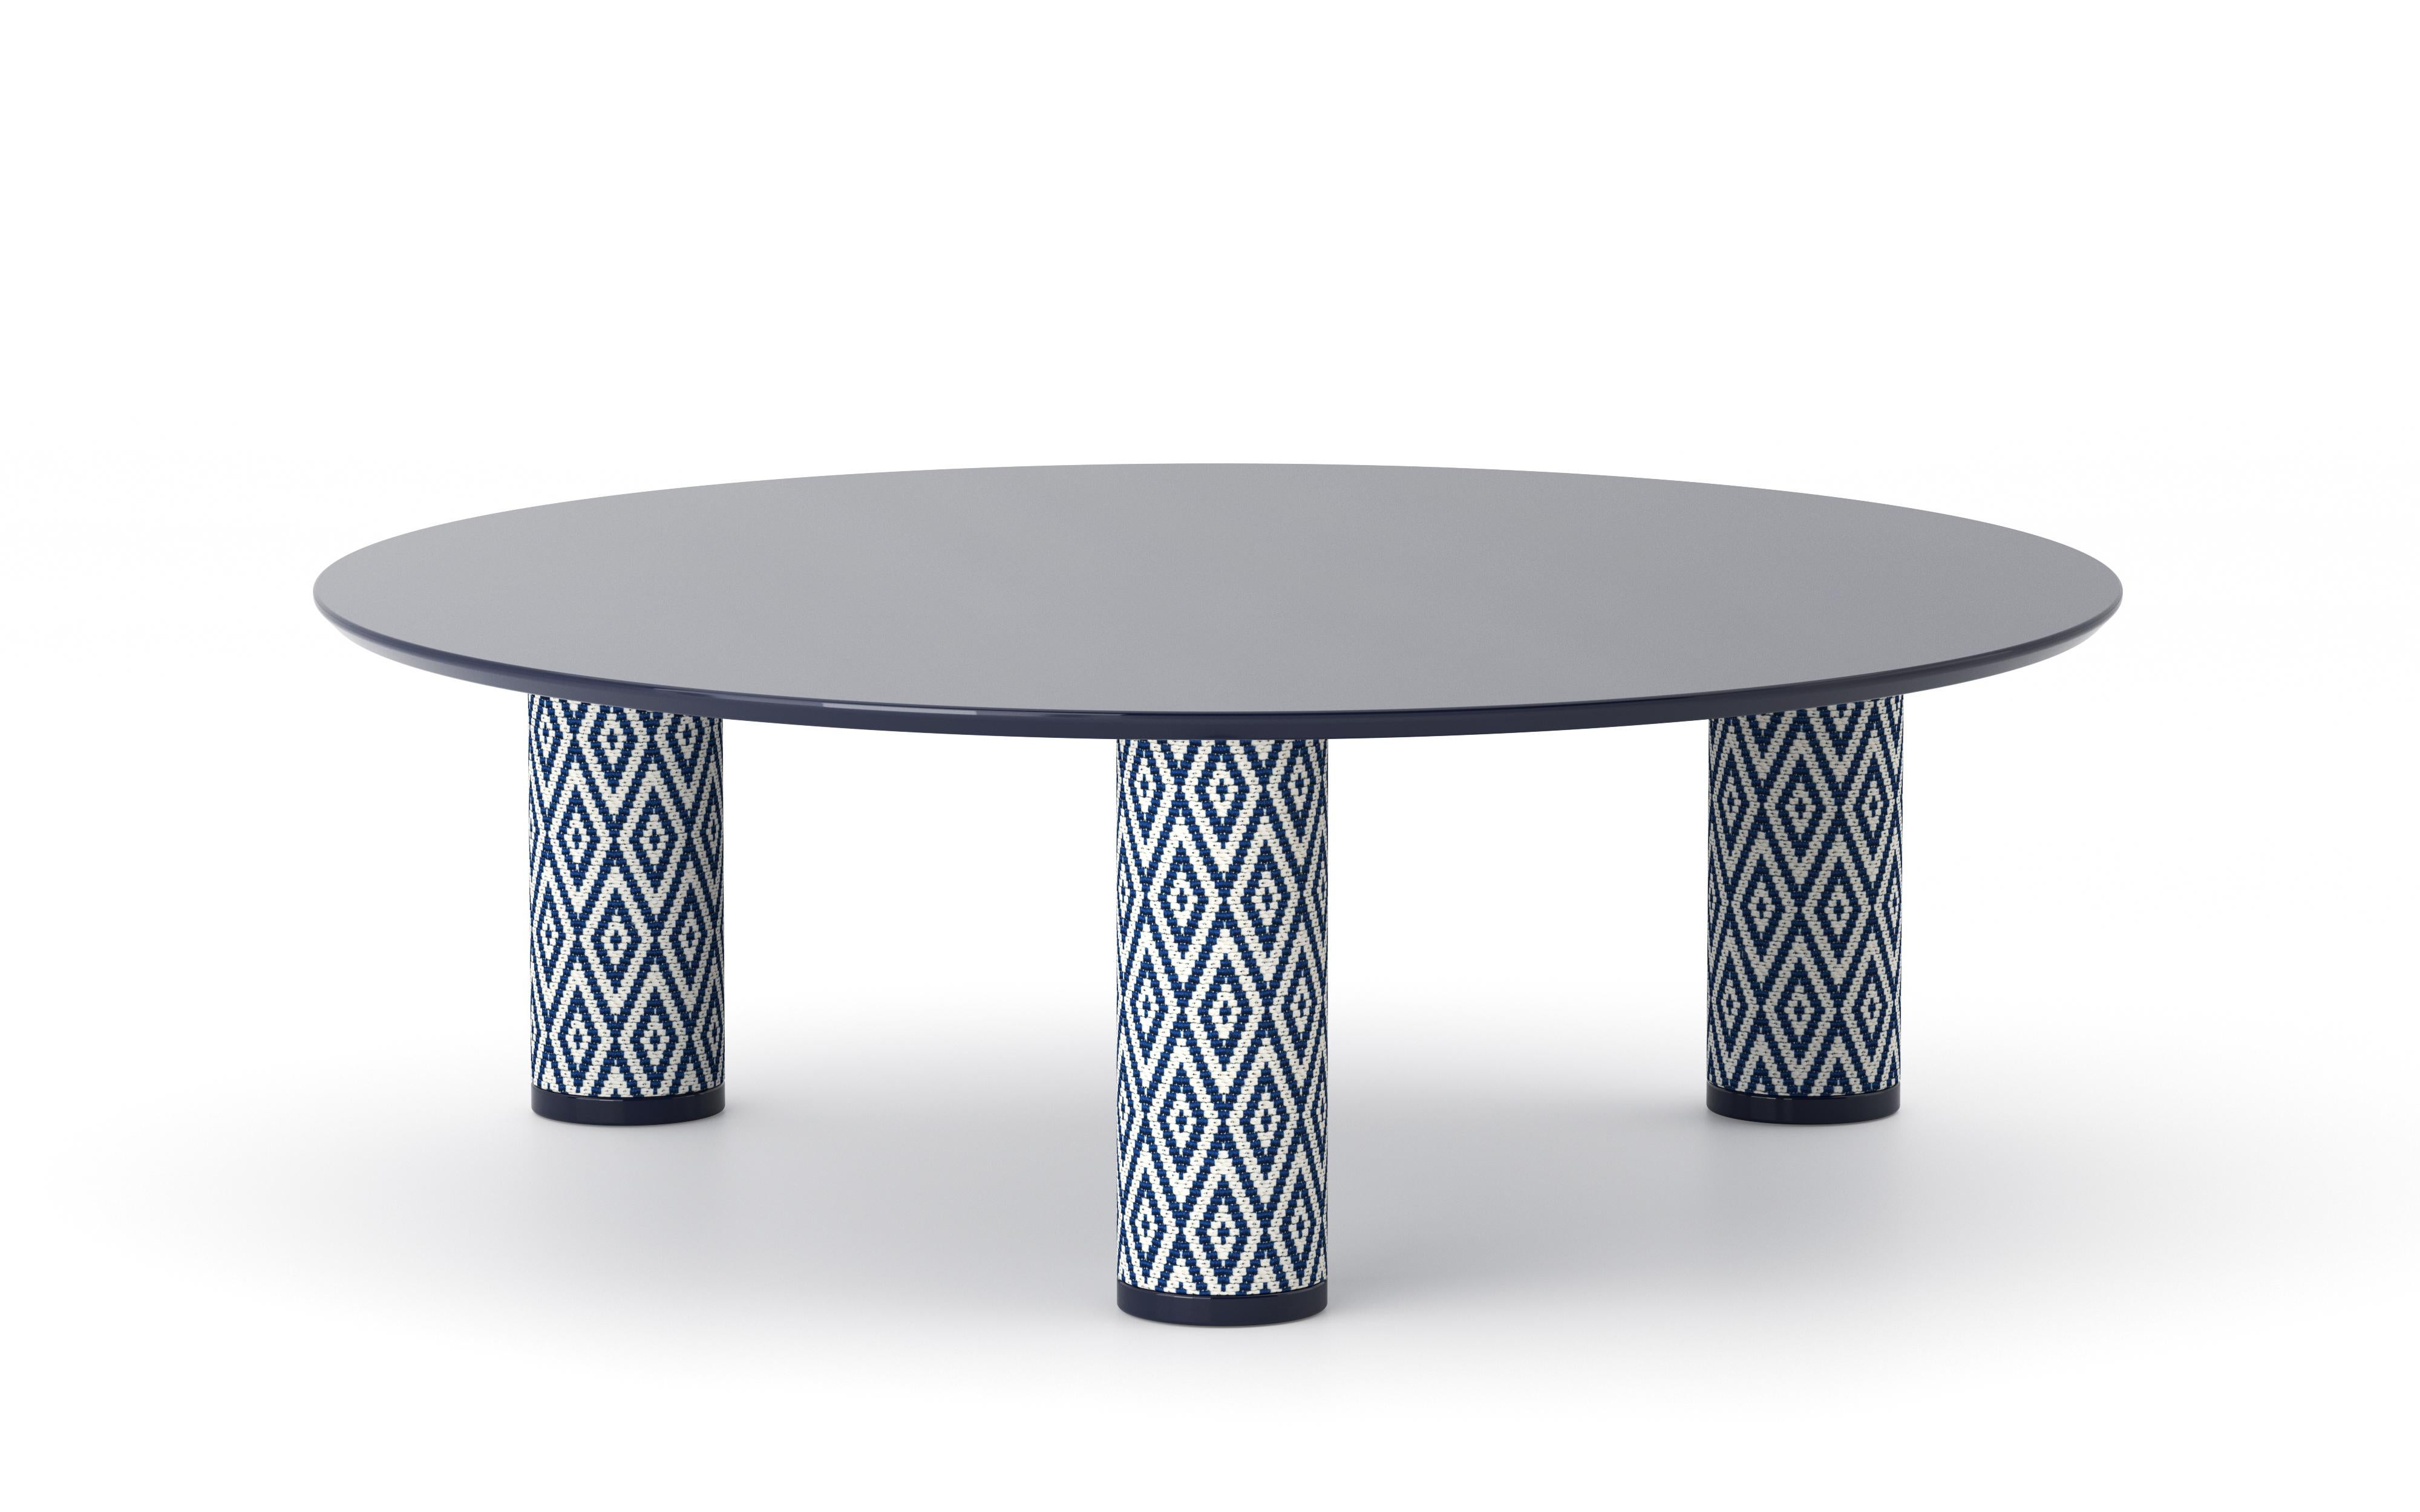 UMA Round 90 ist ein niedriger Tisch aus der gleichnamigen Kollektion, die von Ludovica+Roberto Palomba für P + C Edizioni im Frühjahr 2022 entworfen wurde.
Die runde Harzplatte von UMA Round 90 setzt den Designakzent auf die zylindrischen